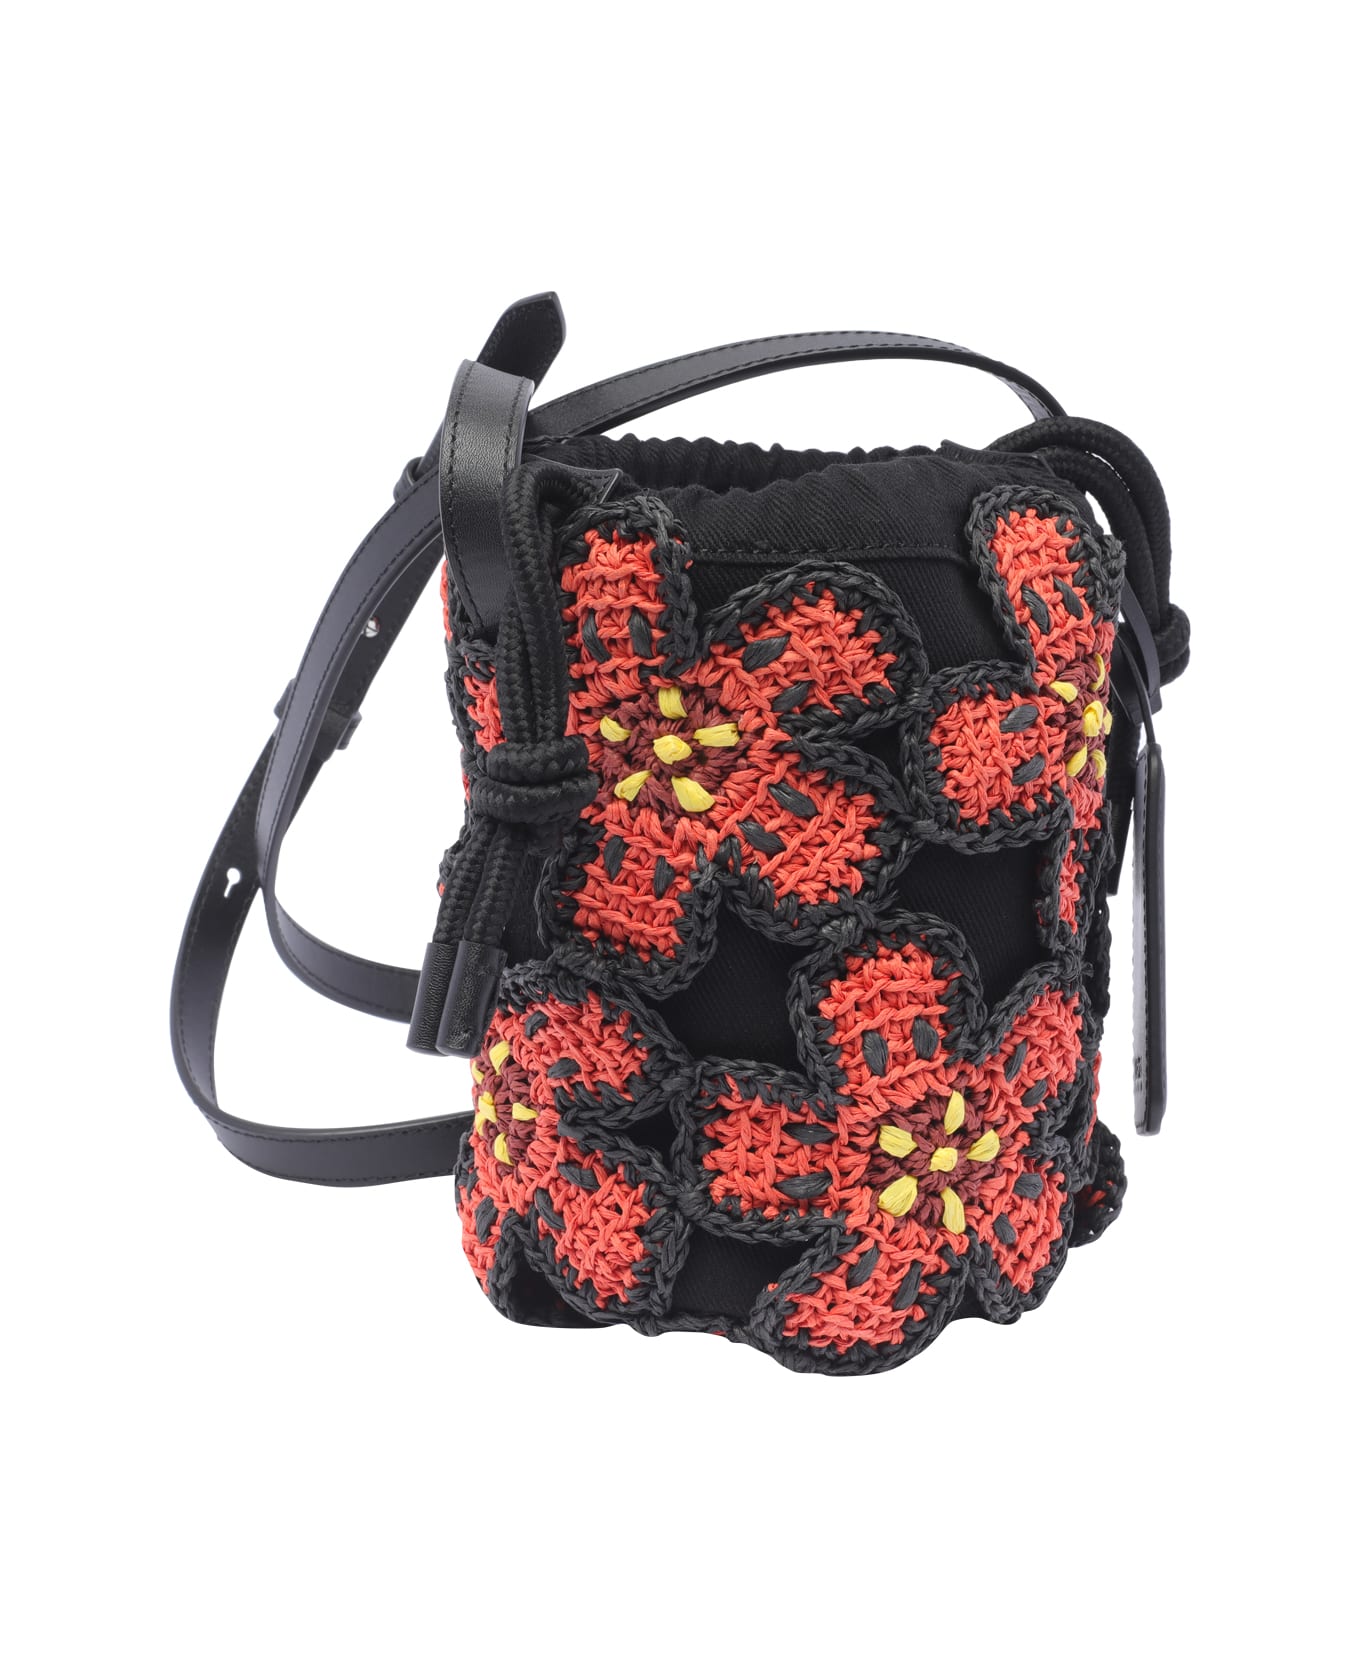 Kenzo Floral Patterned Bucket Bag - Black トートバッグ